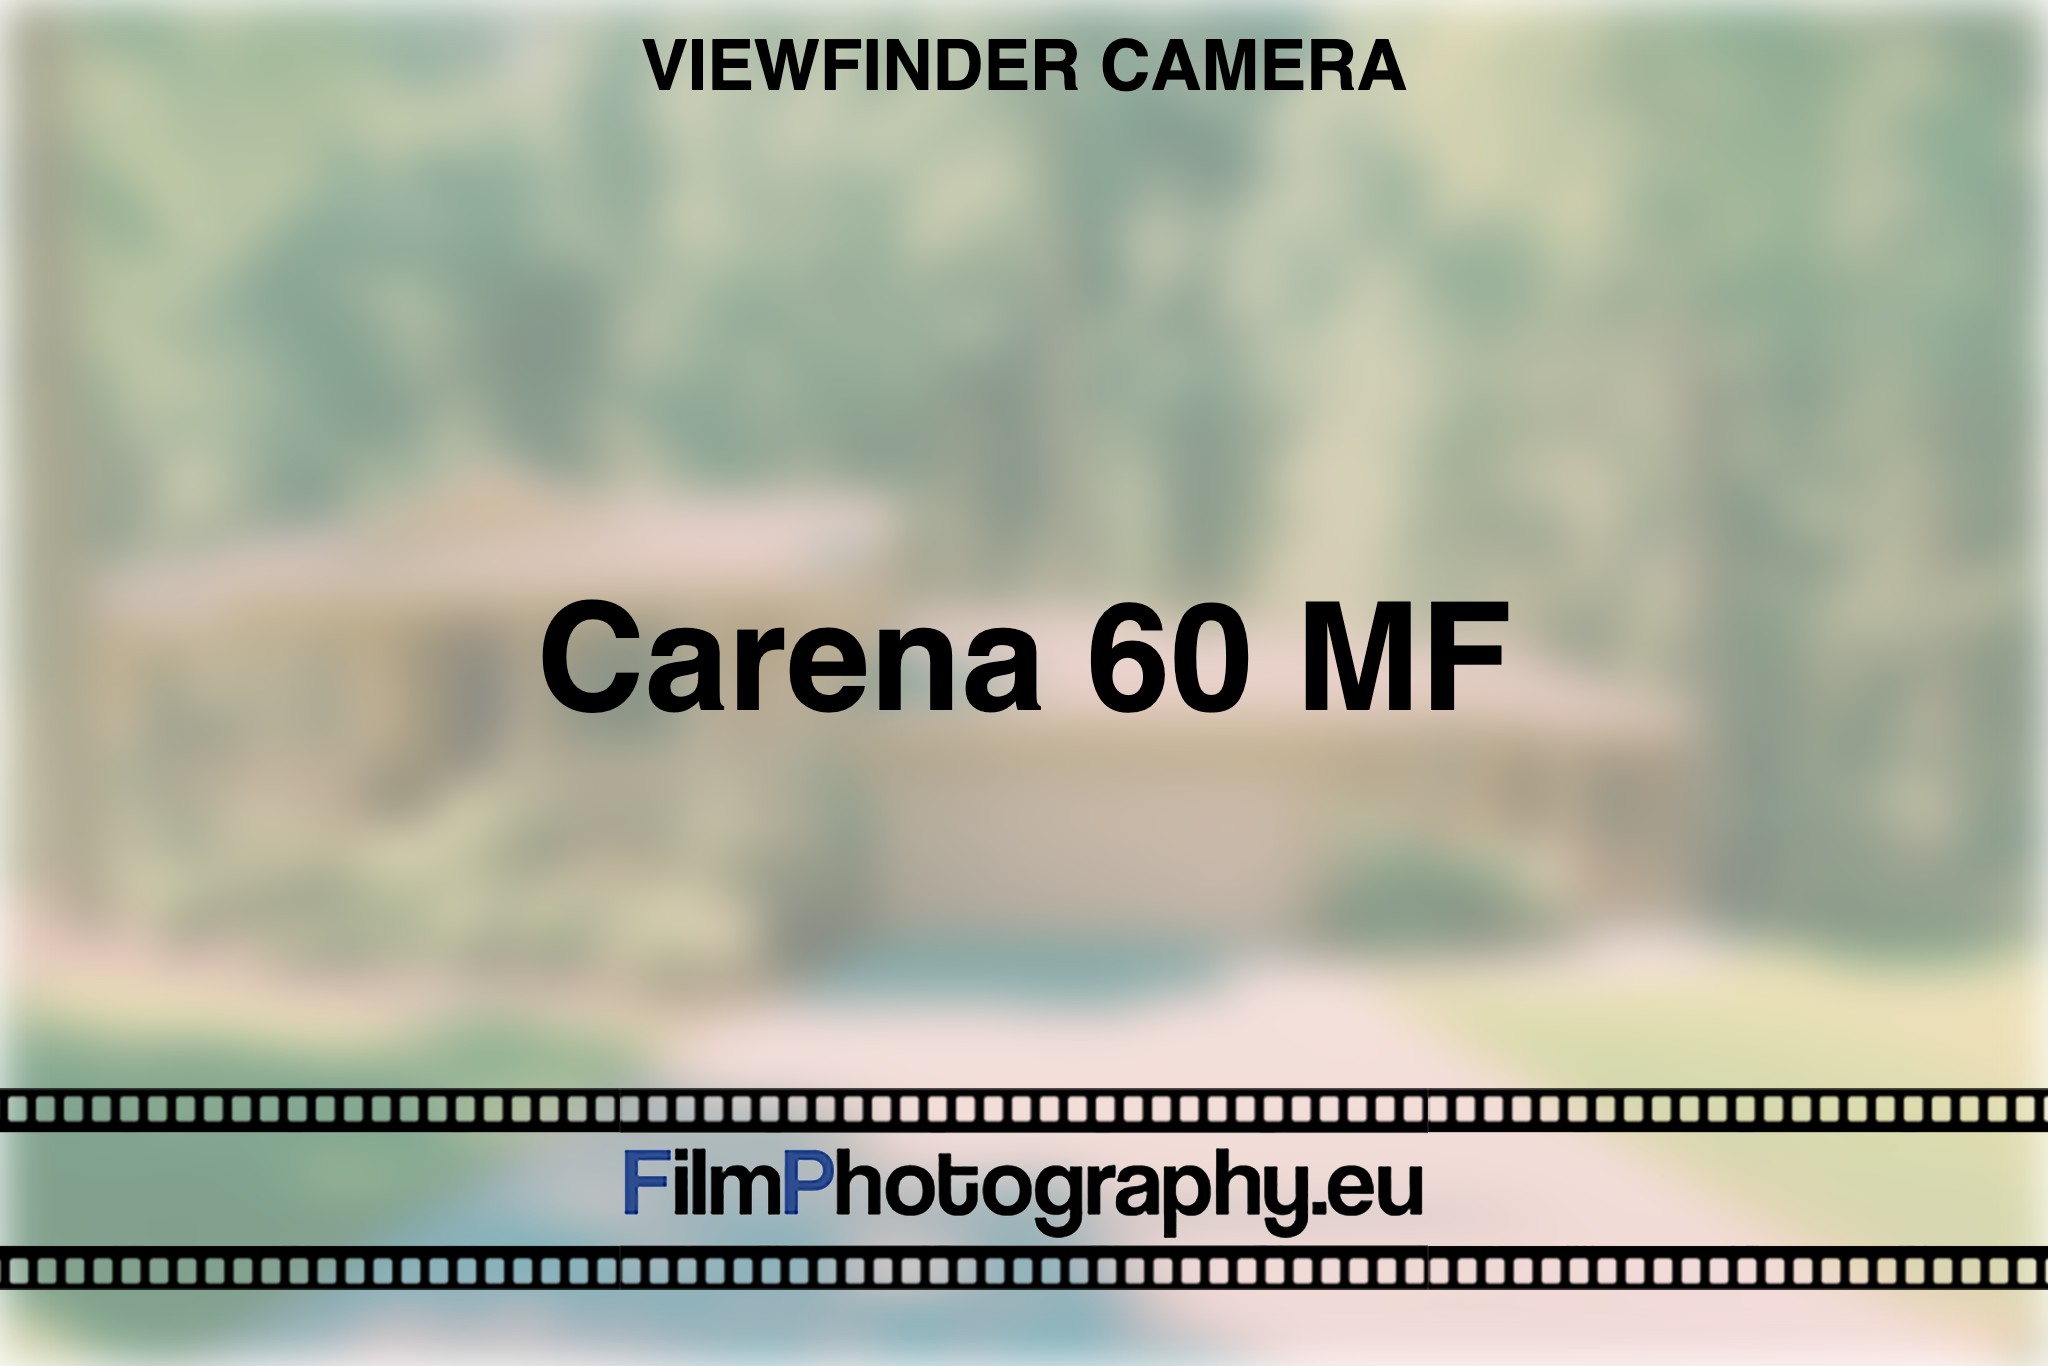 carena-60-mf-viewfinder-camera-bnv